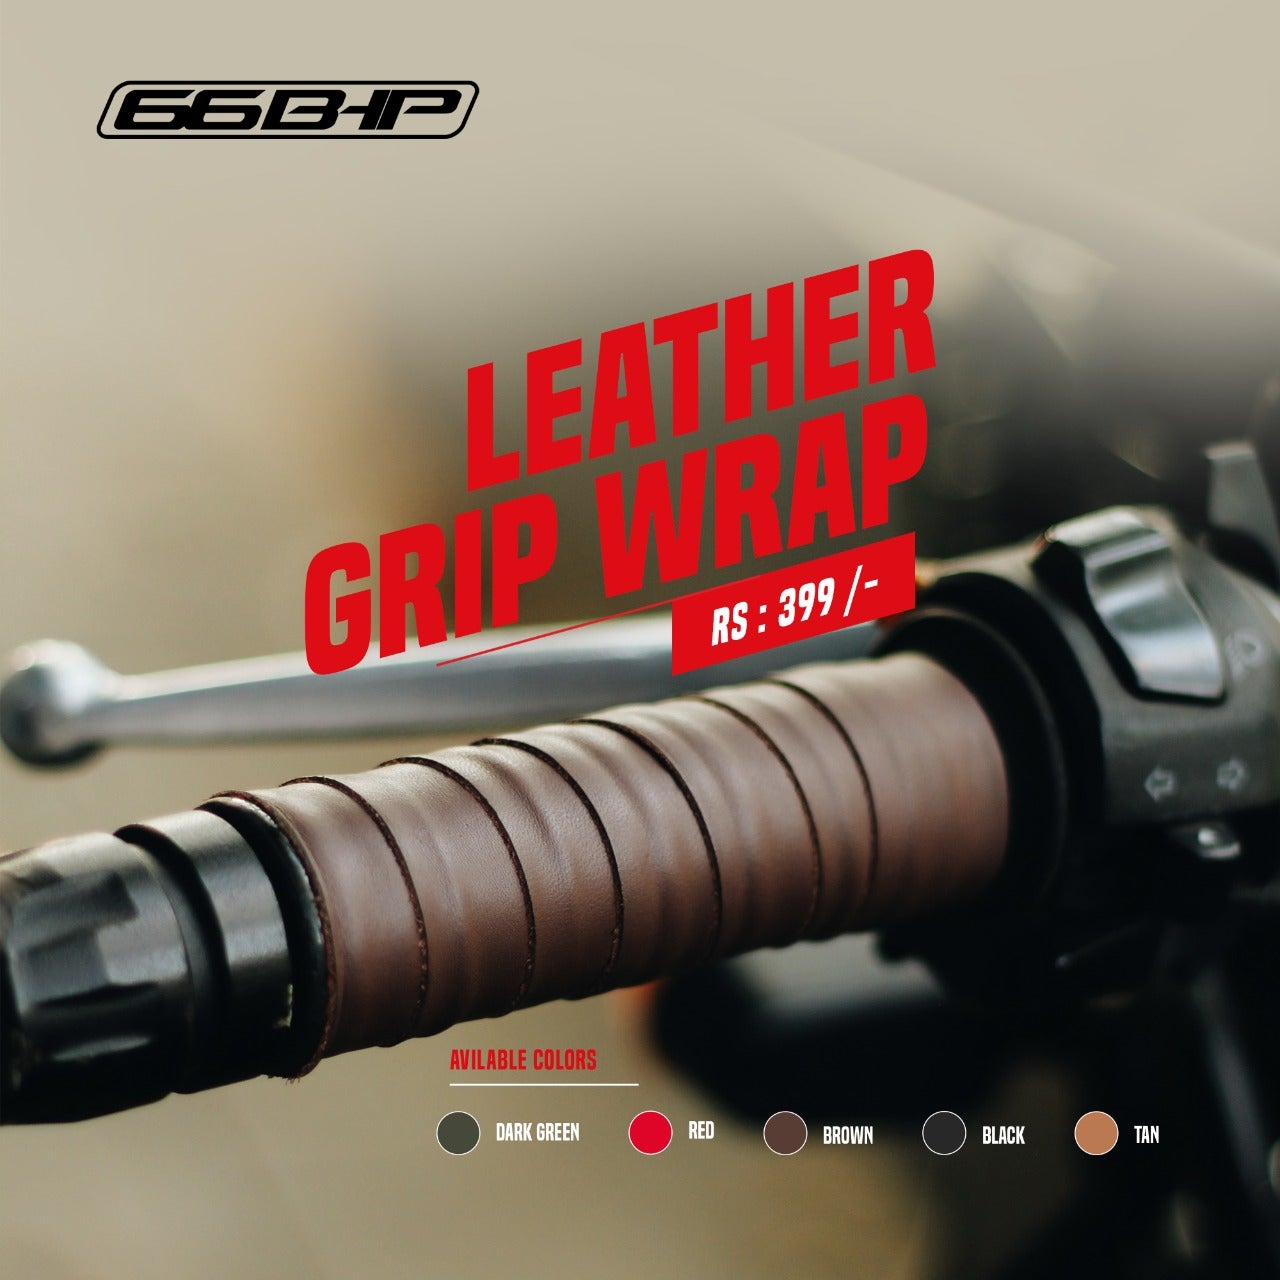 66Bhp Leather handle grip wrap (Pair) – LRL Motors